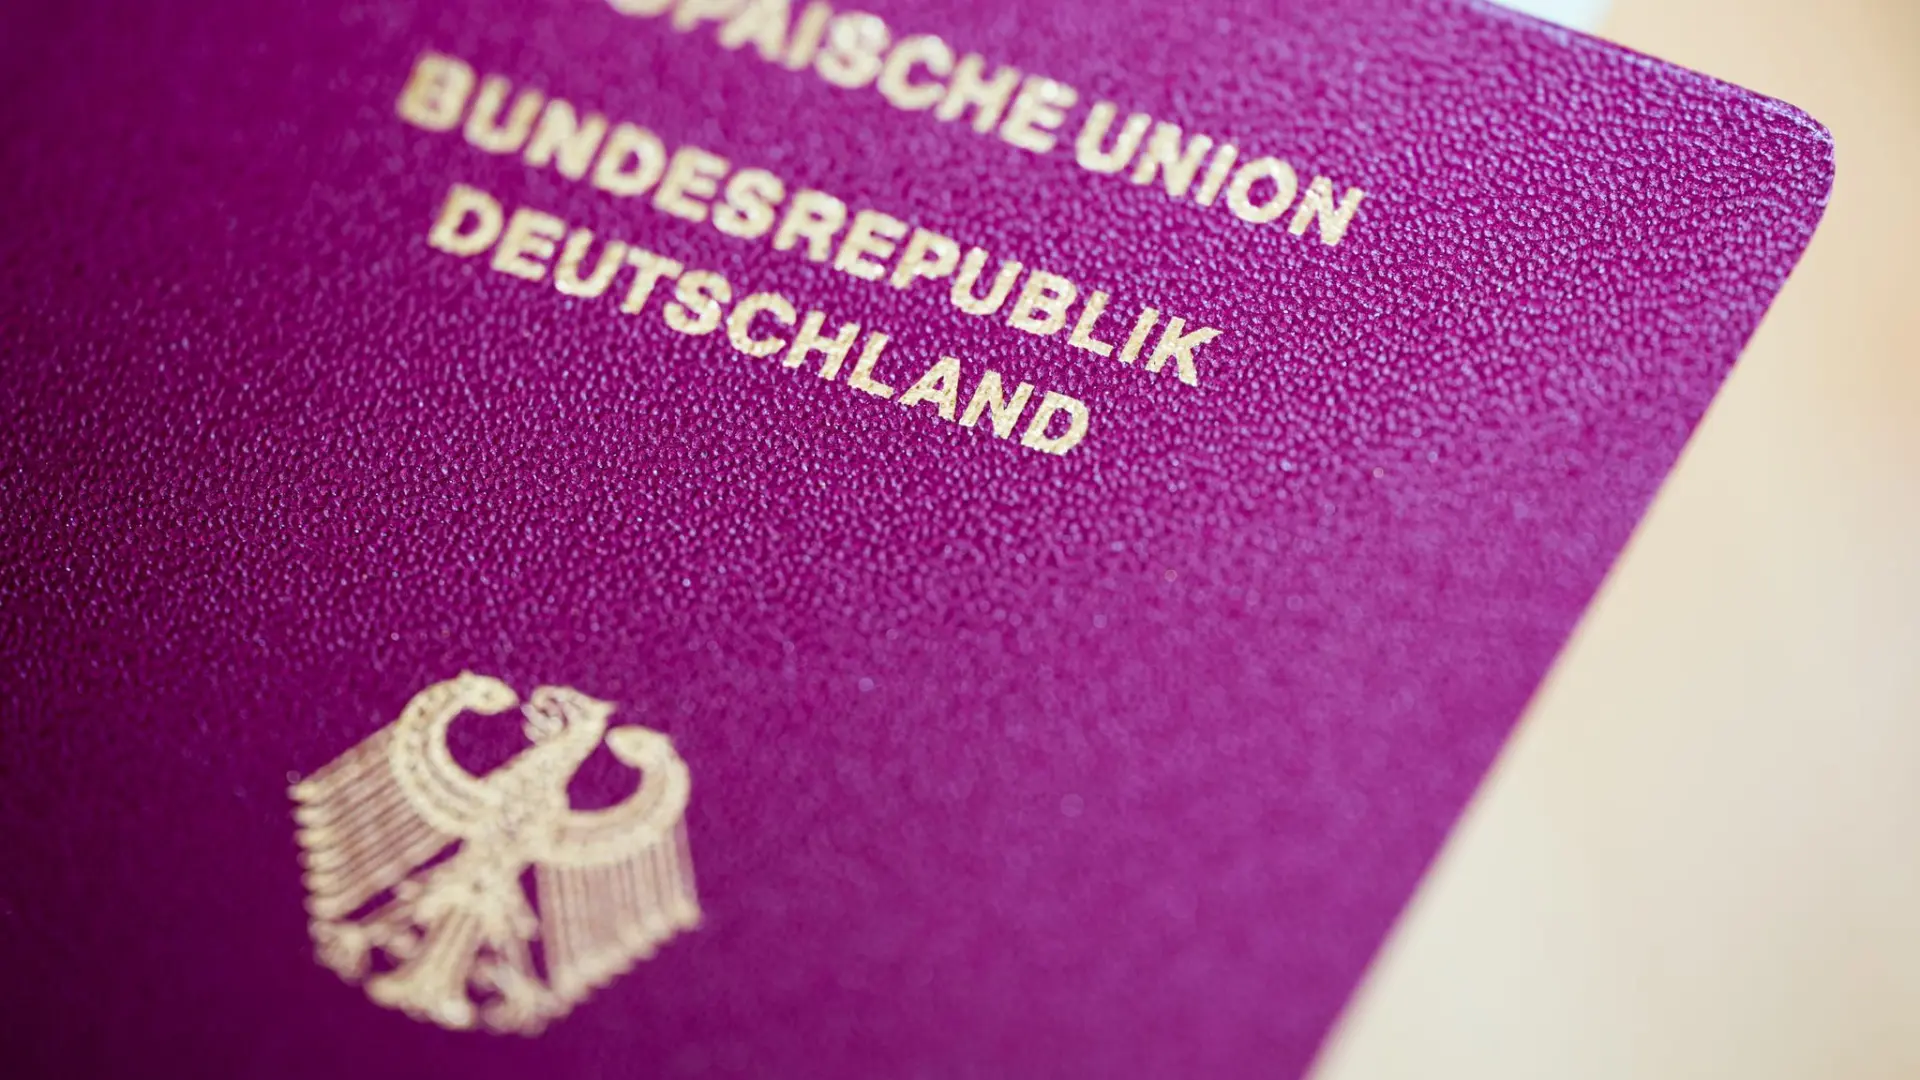 Nemačka_pasoš_nemački pasoš_Foto Rolf Vennenbernd dpa-64765bd7ac31b.webp